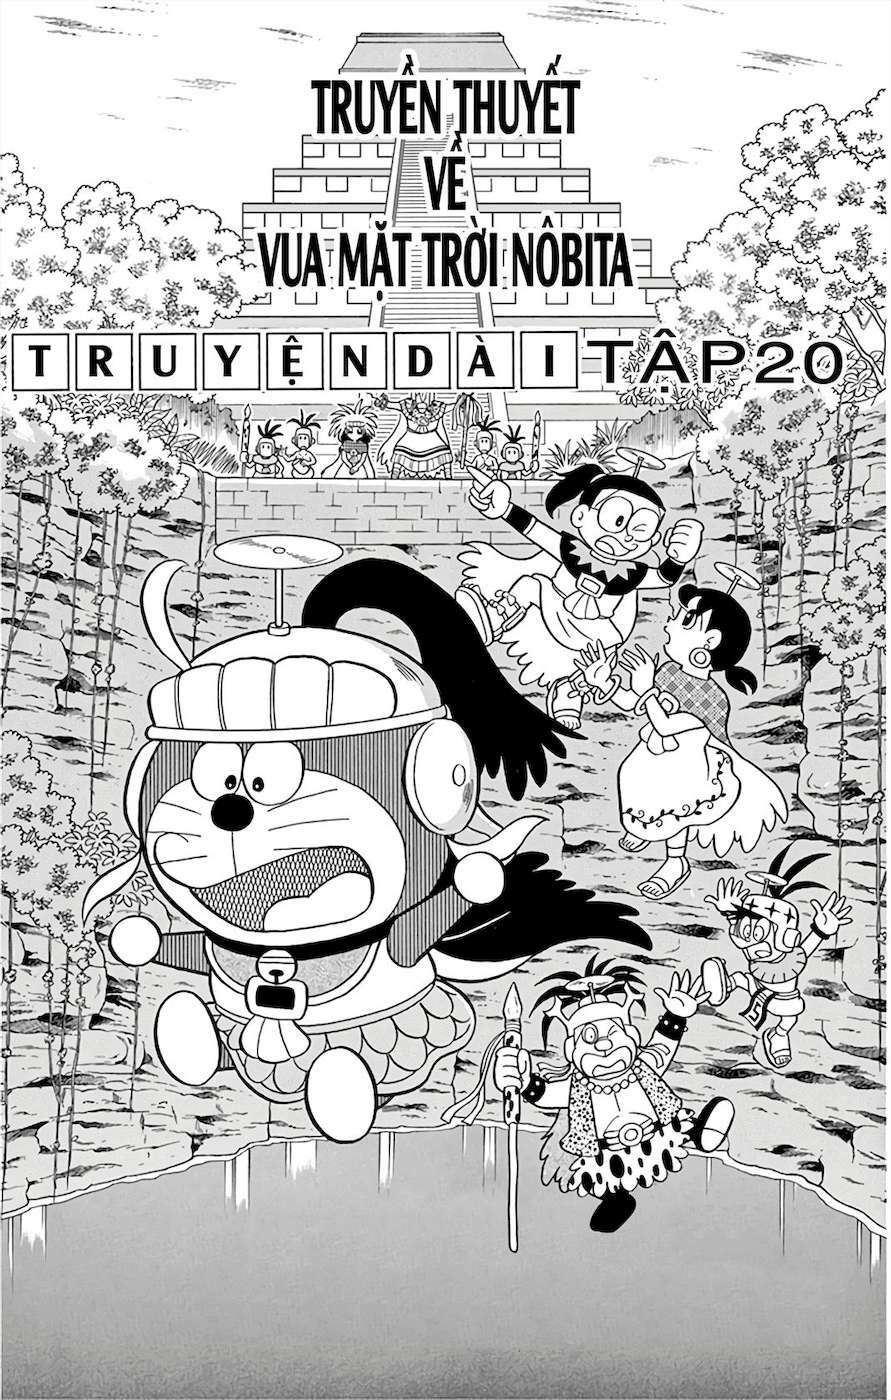 Truyện Tranh Doraemon: Truyền Thuyết Về Vua Mặt Trời Nôbita trang 2